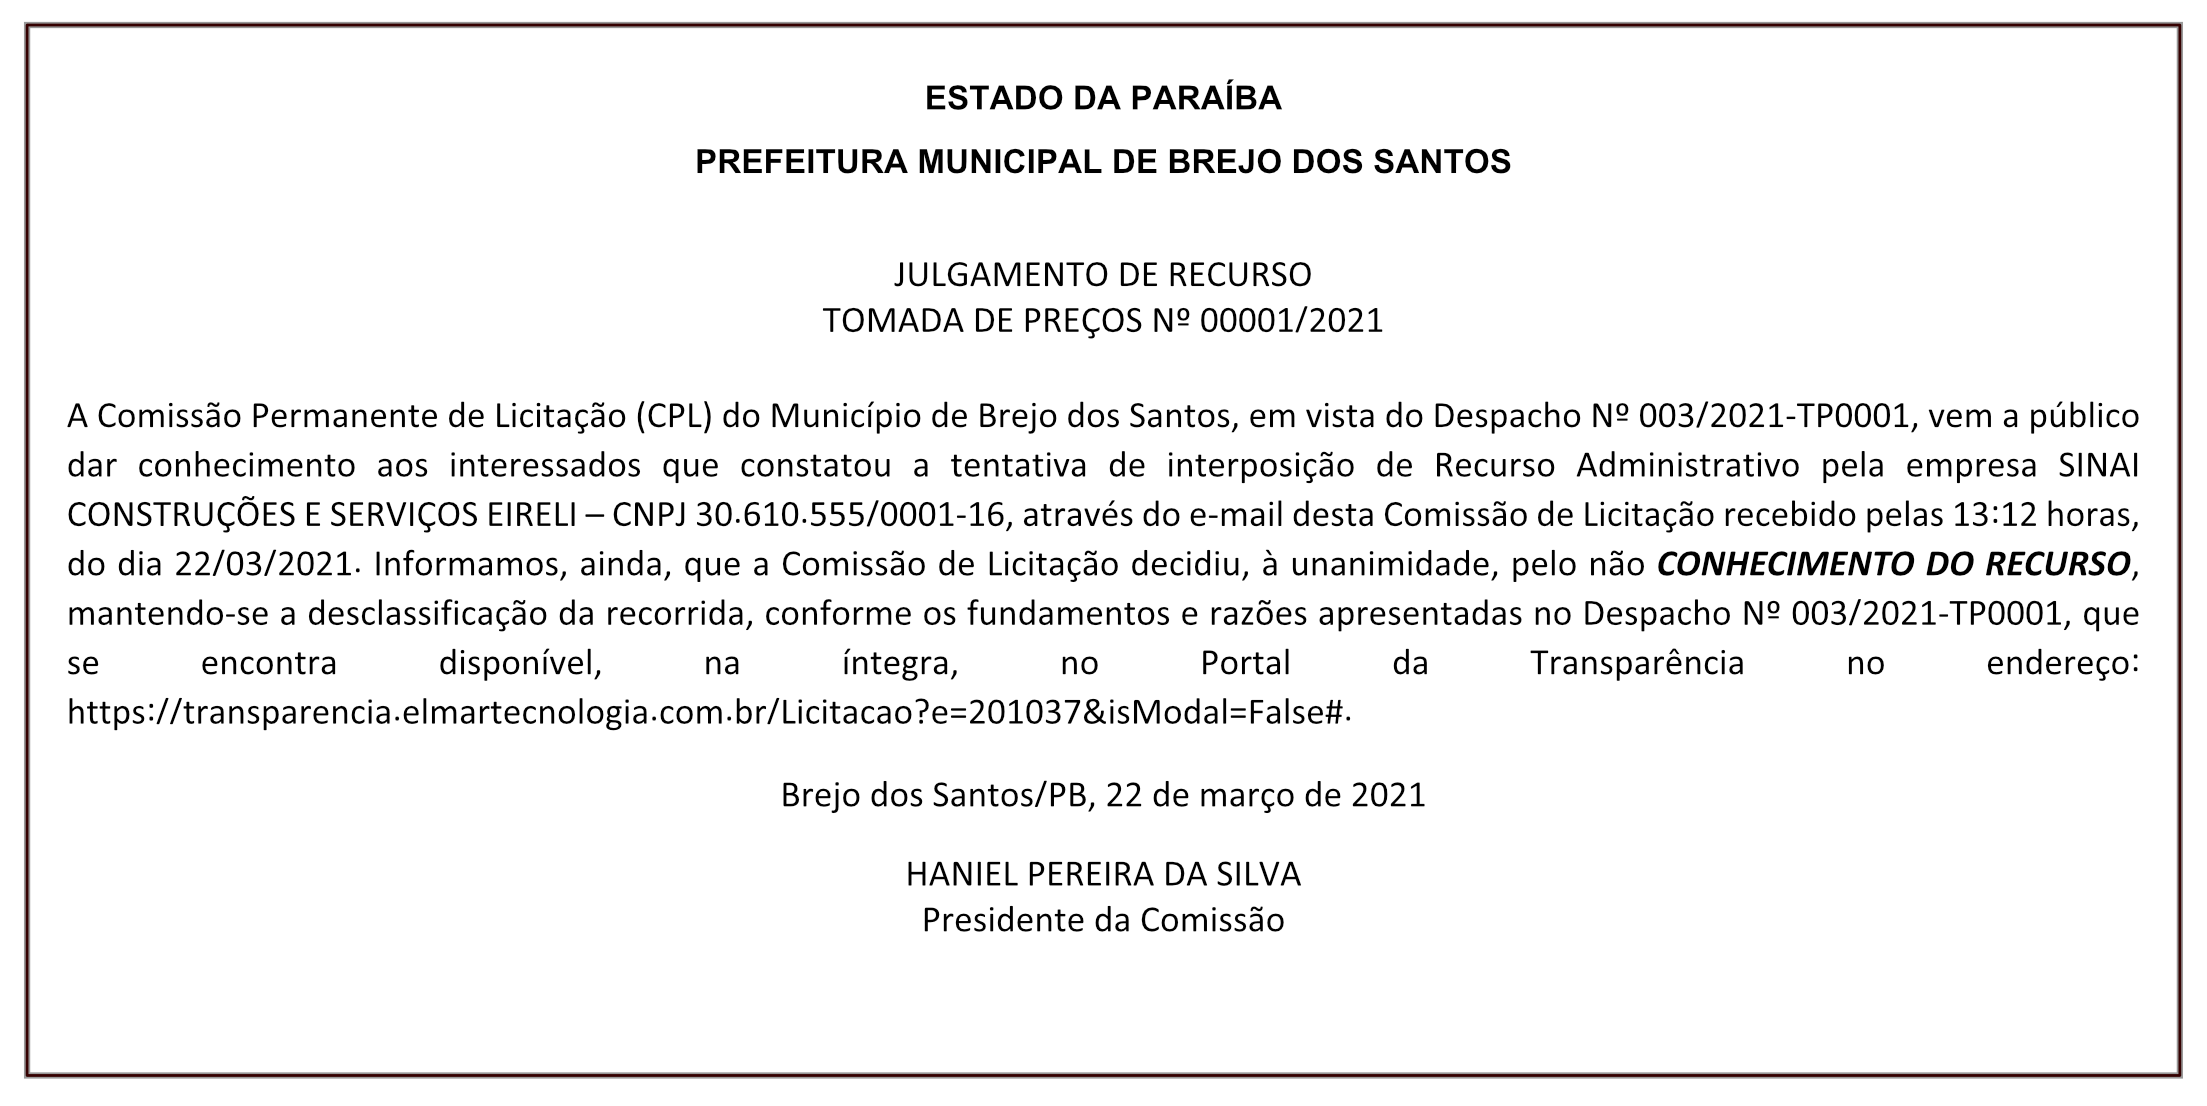 PREFEITURA MUNICIPAL DE BREJO DOS SANTOS – JULGAMENTO DE RECURSO – TOMADA DE PREÇOS Nº 00001/2021